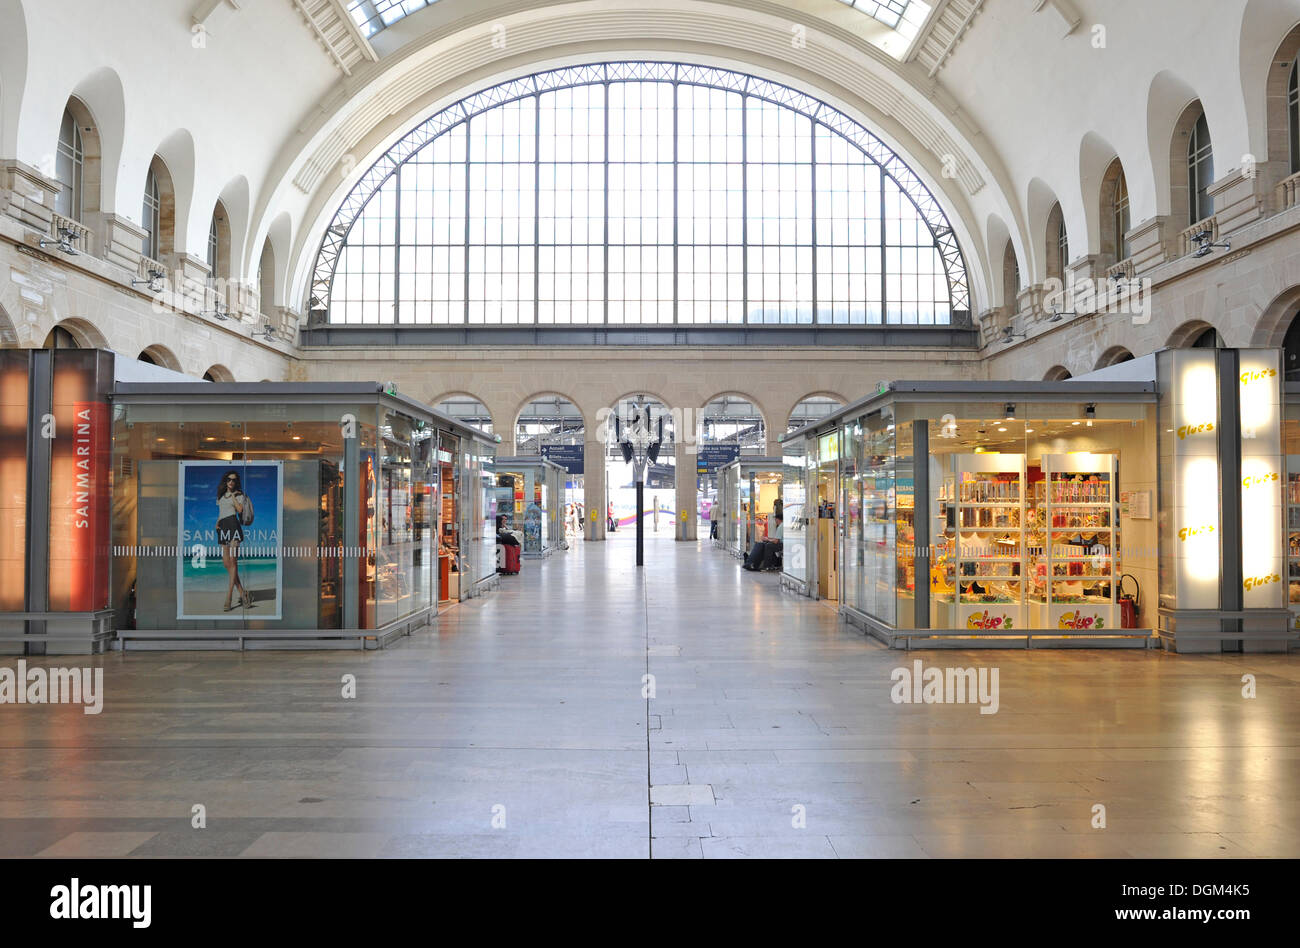 Concourse of Gare de l'Est railway station, Paris, France, Europe Stock Photo